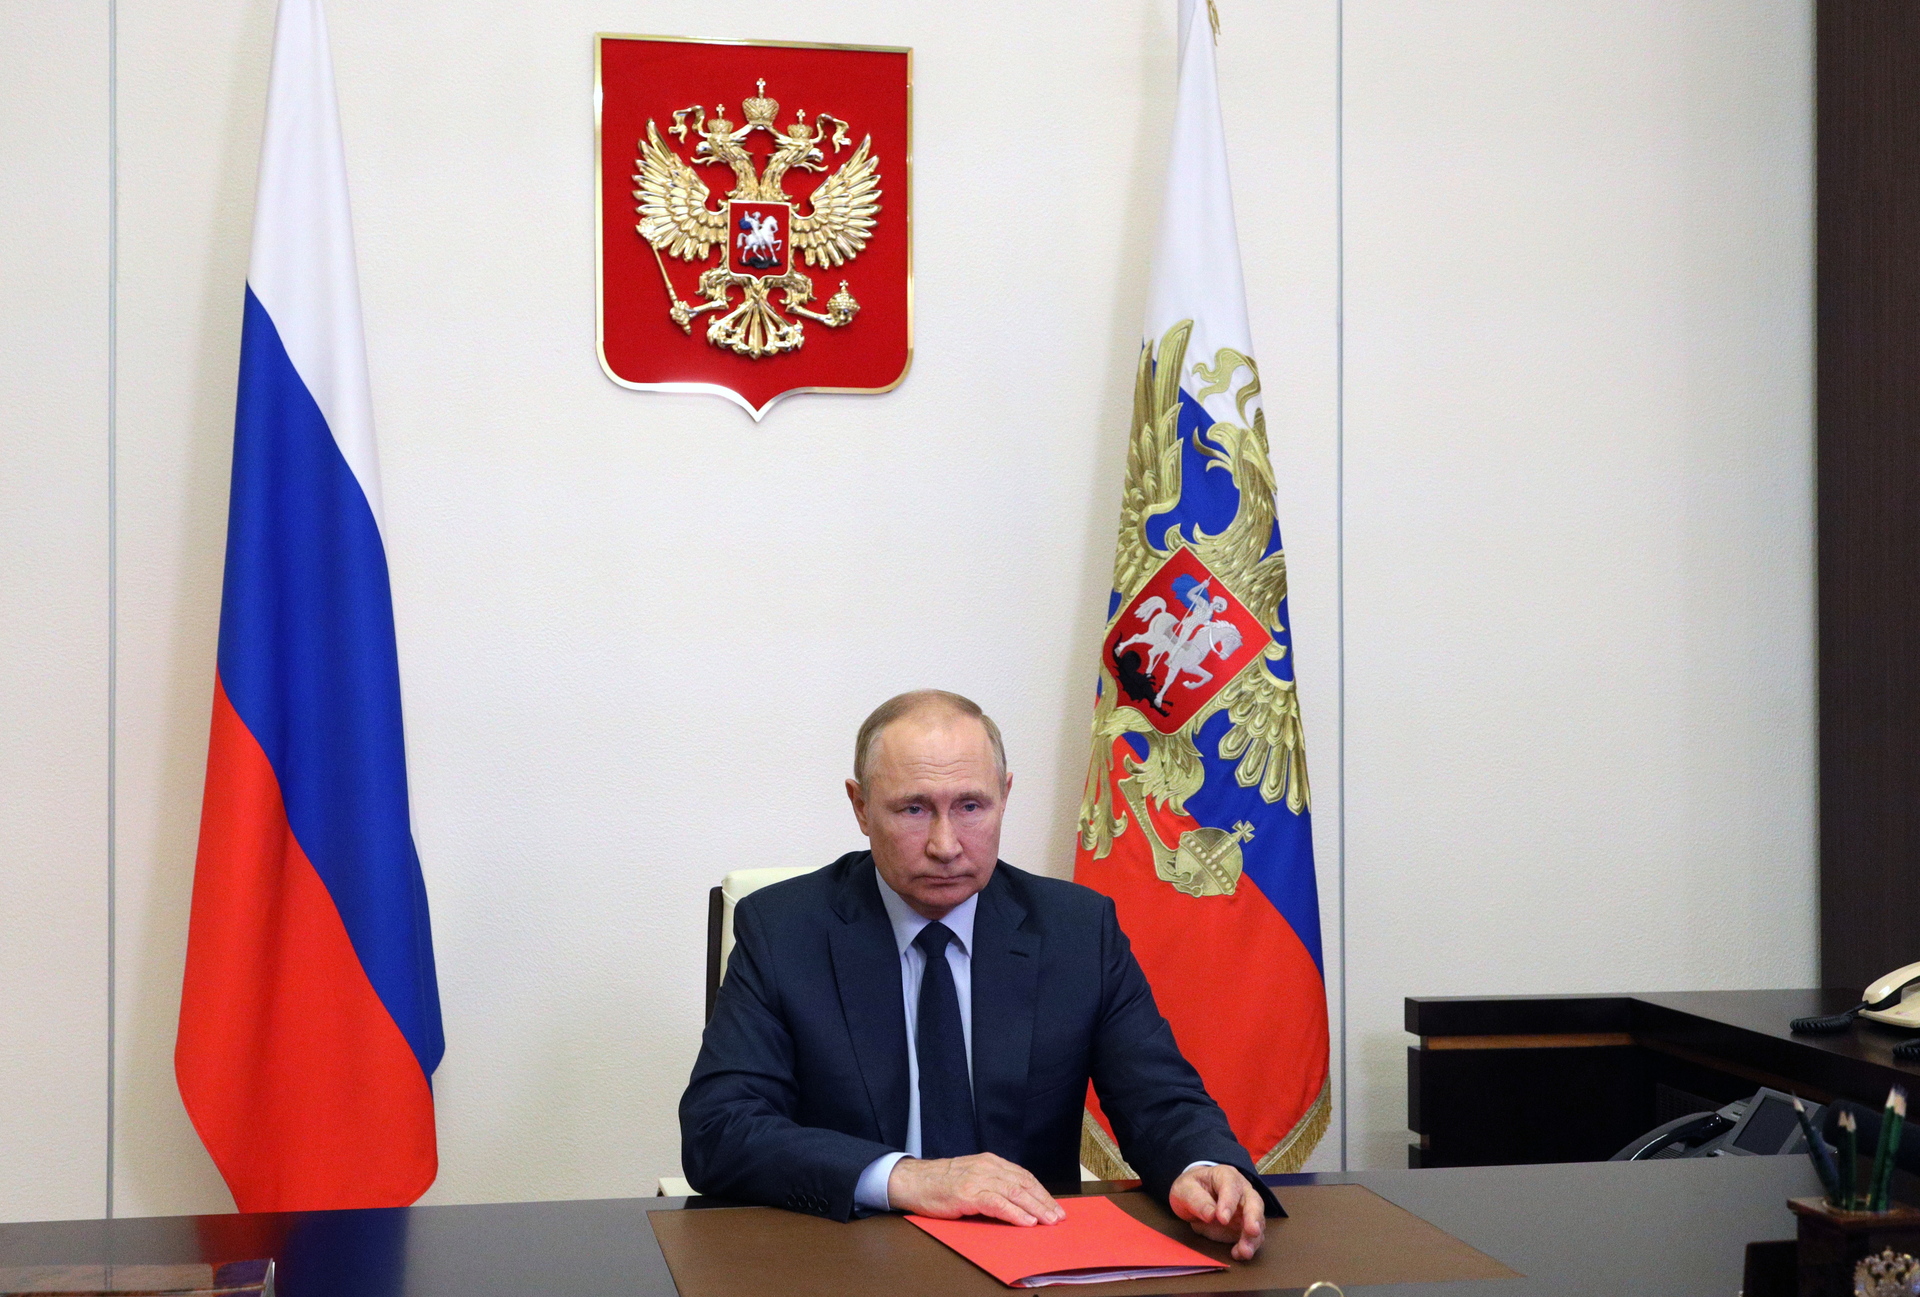 Vladimir Putin ofrece a sus aliados armamento para garantizar la paz y seguridad en un mundo multipolar